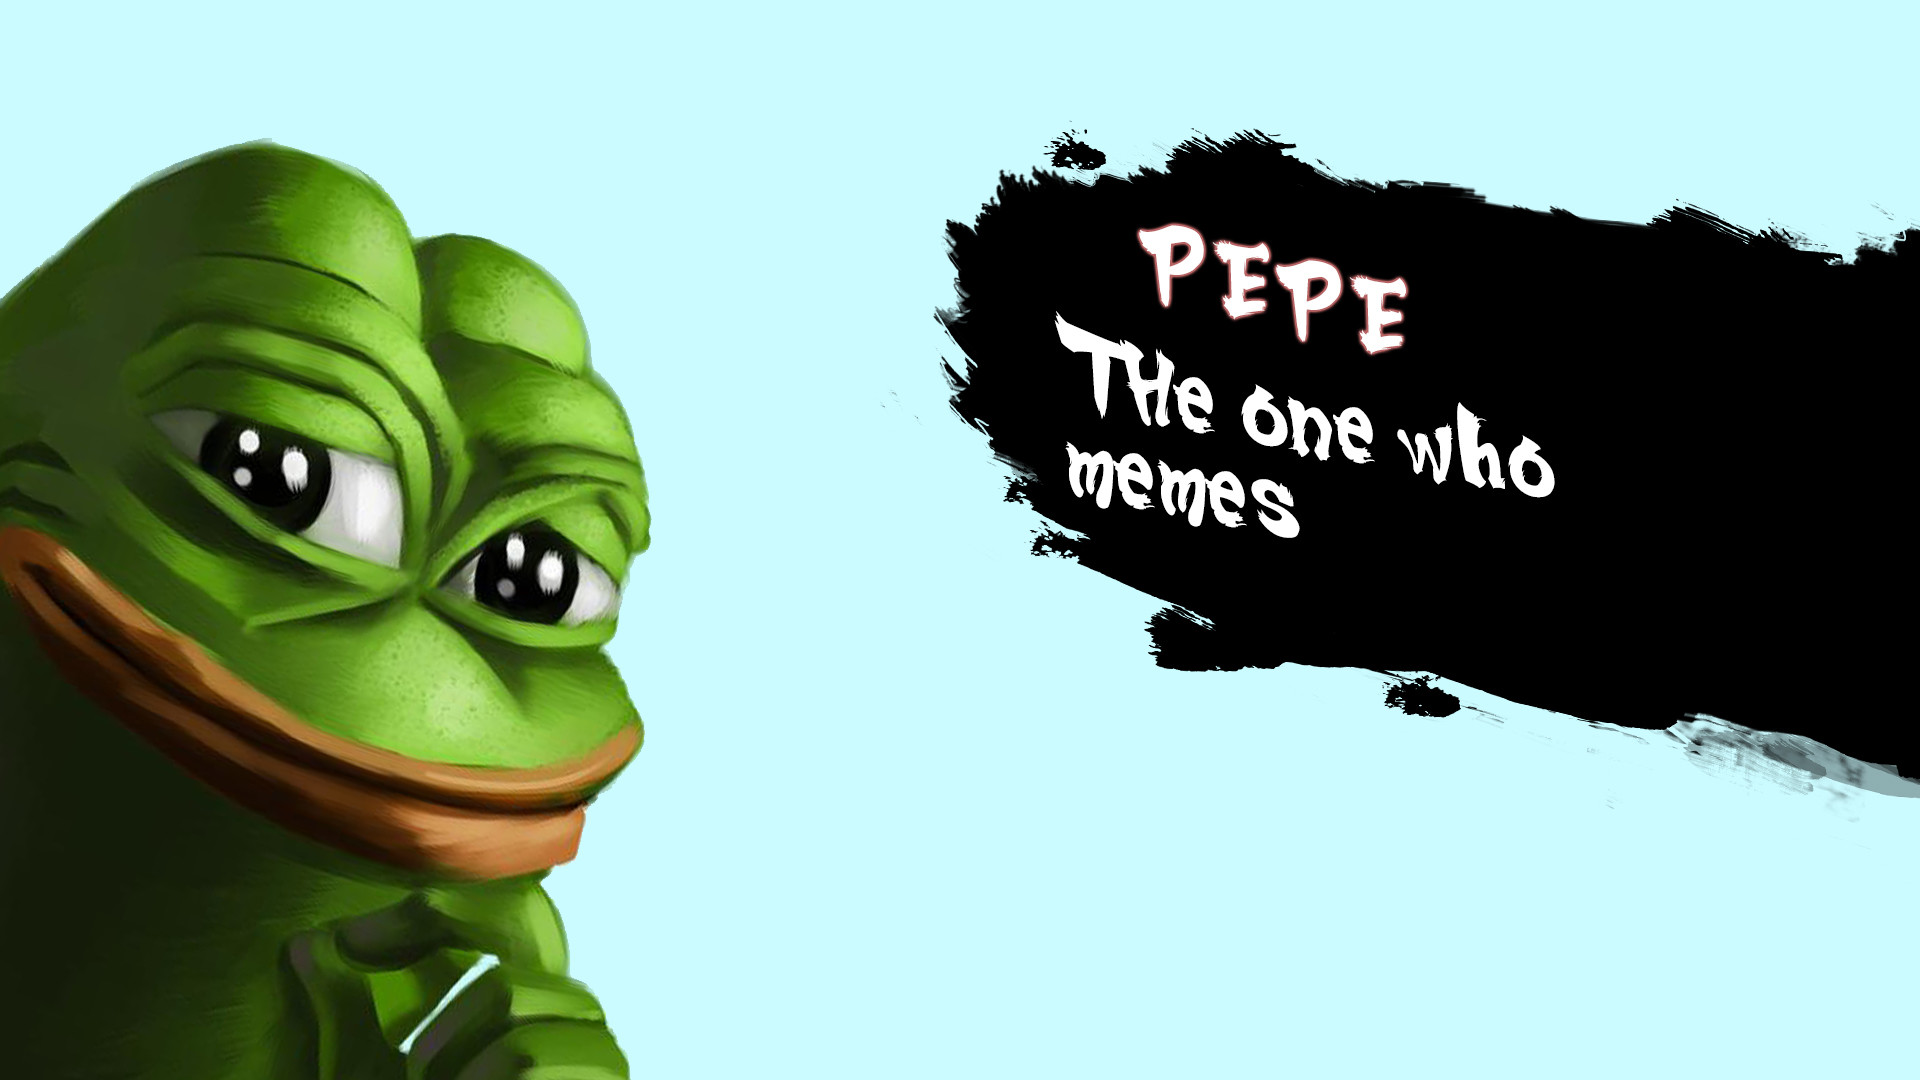 Rare Pepe Wallpaper 73 Images